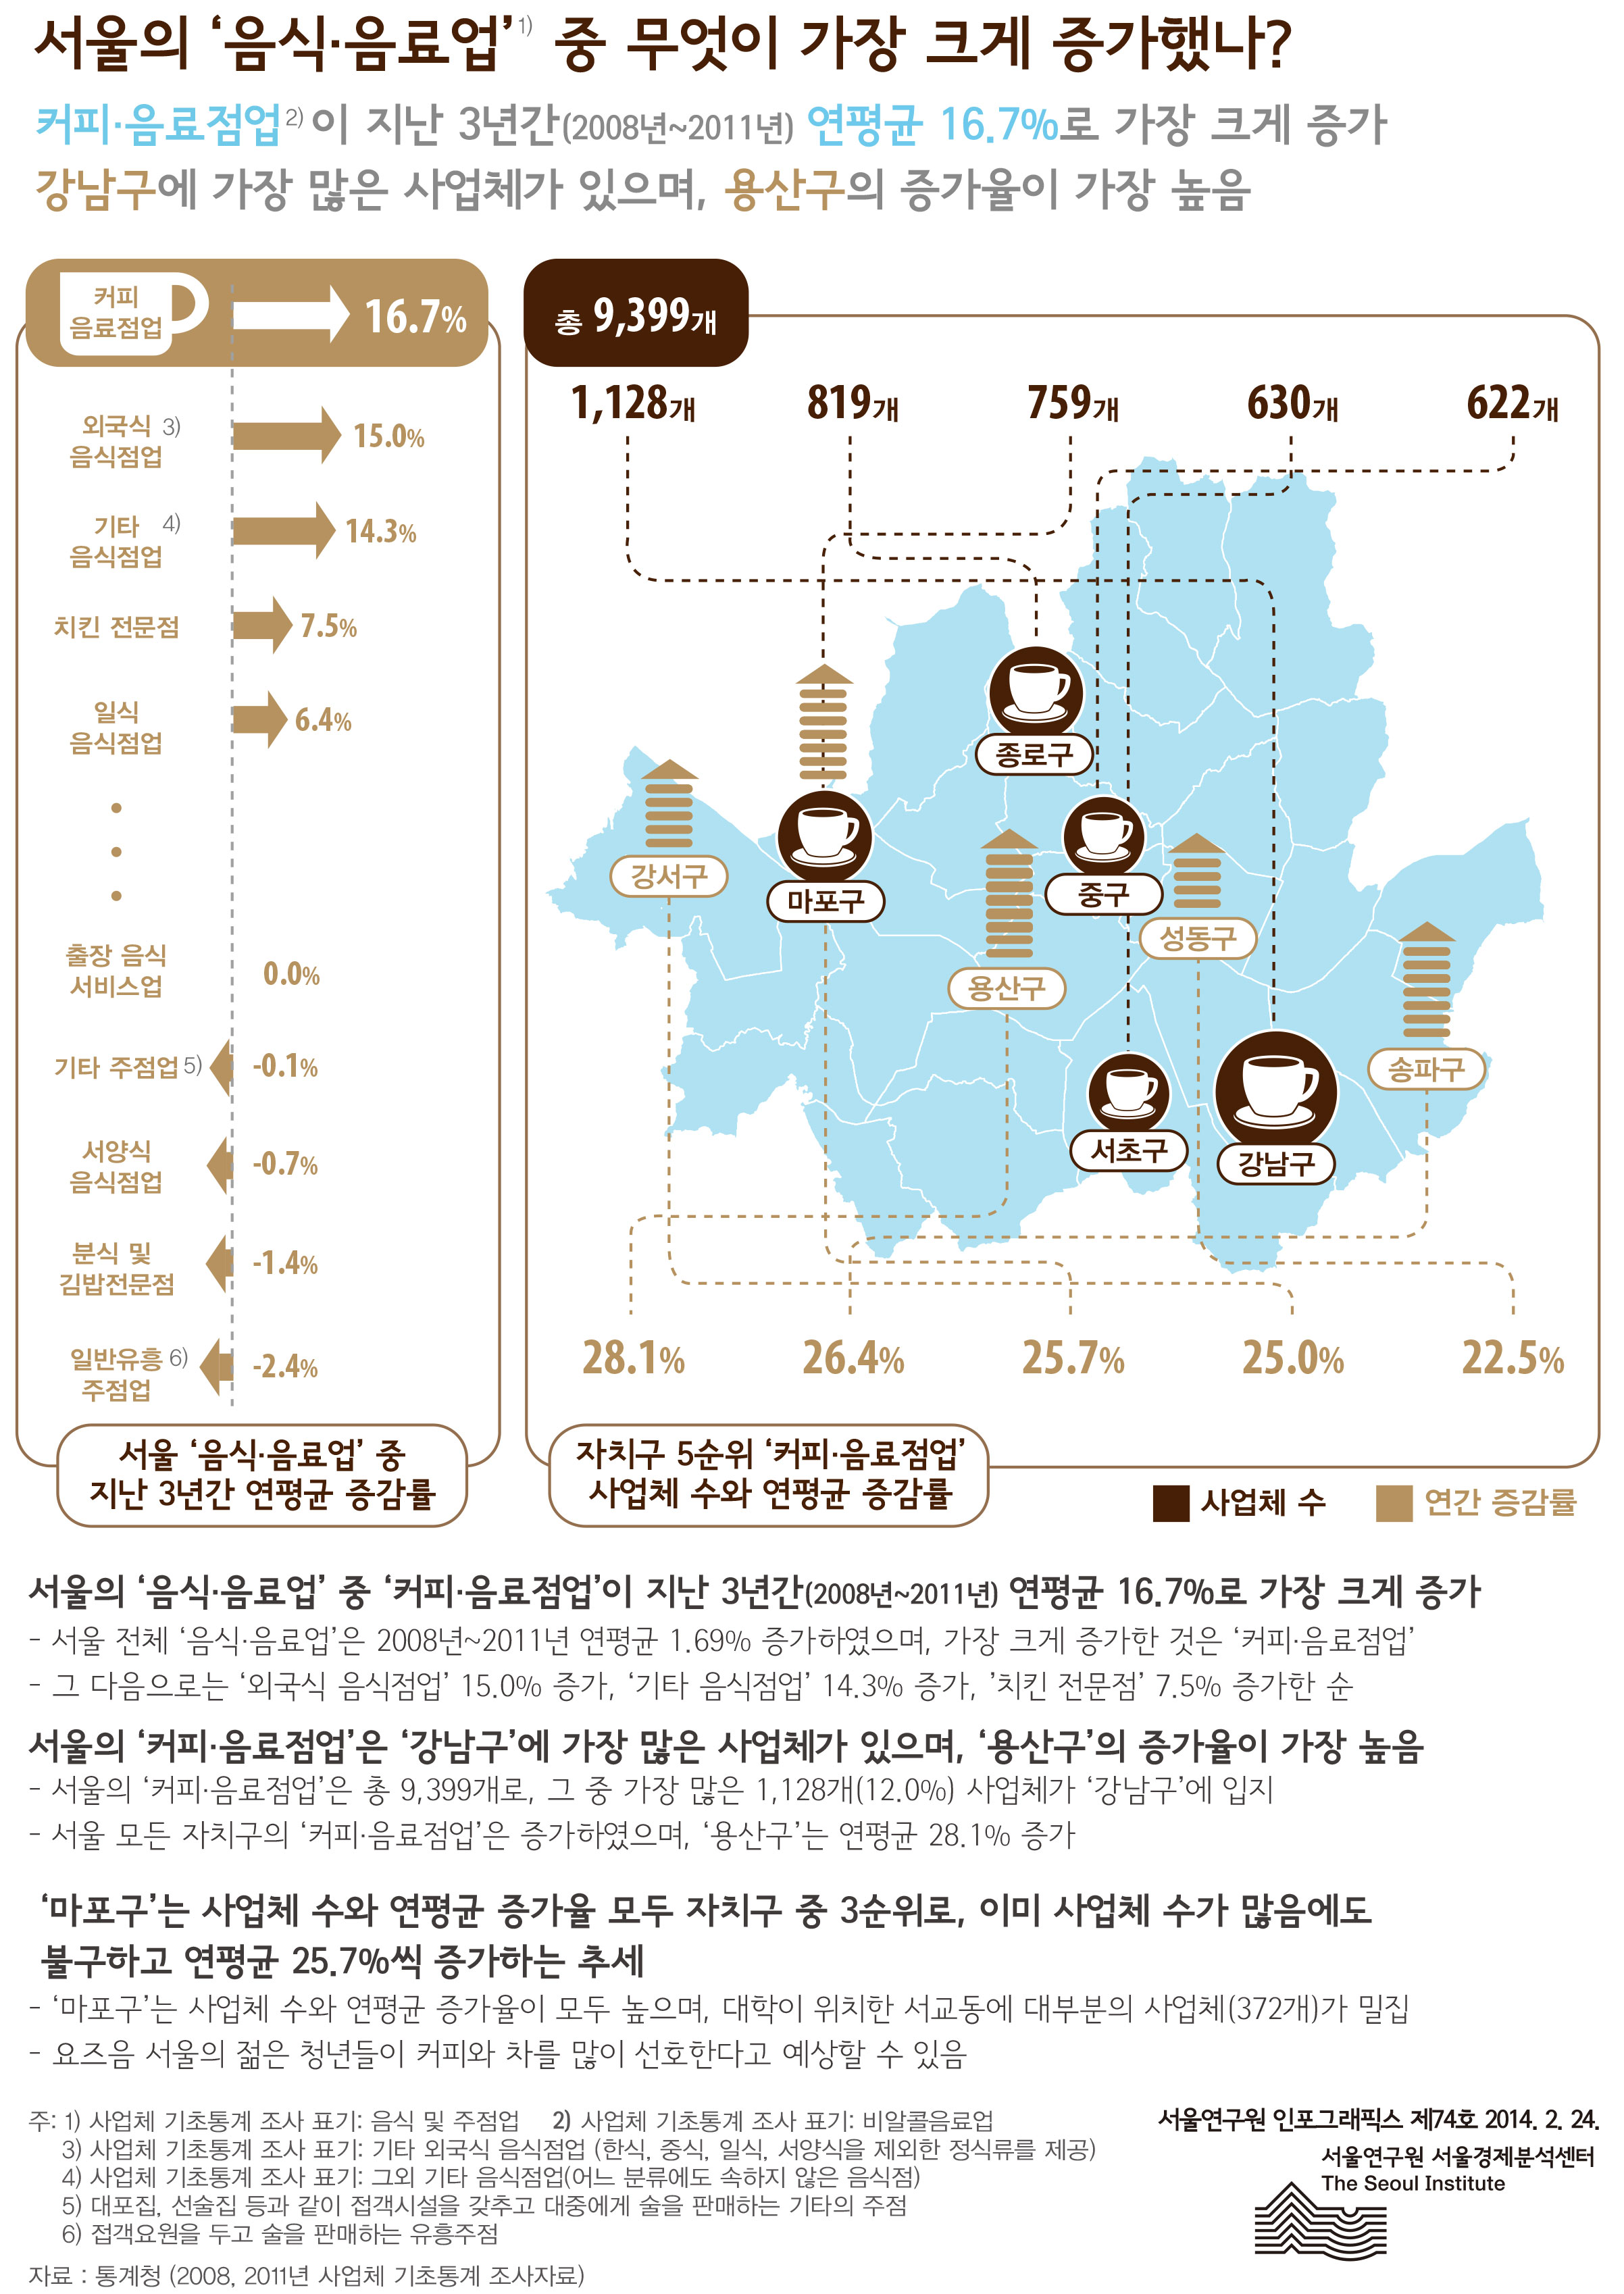 서울의‘음식·음료업’중 무엇이 가장 크게 증가했나? 서울인포그래픽스 제74호 2014년 2월 26일 커피·음료점업이 지난 3년간(2008년~2011년) 연평균 16.7%로 가장 크게 증가. 강남구에 가장 많은 사업체가 있으며, 용산구의 증가율이 가장 높음으로 정리될 수 있습니다. 서울의‘음식·음료업’중 무엇이 가장 크게 증가했나?